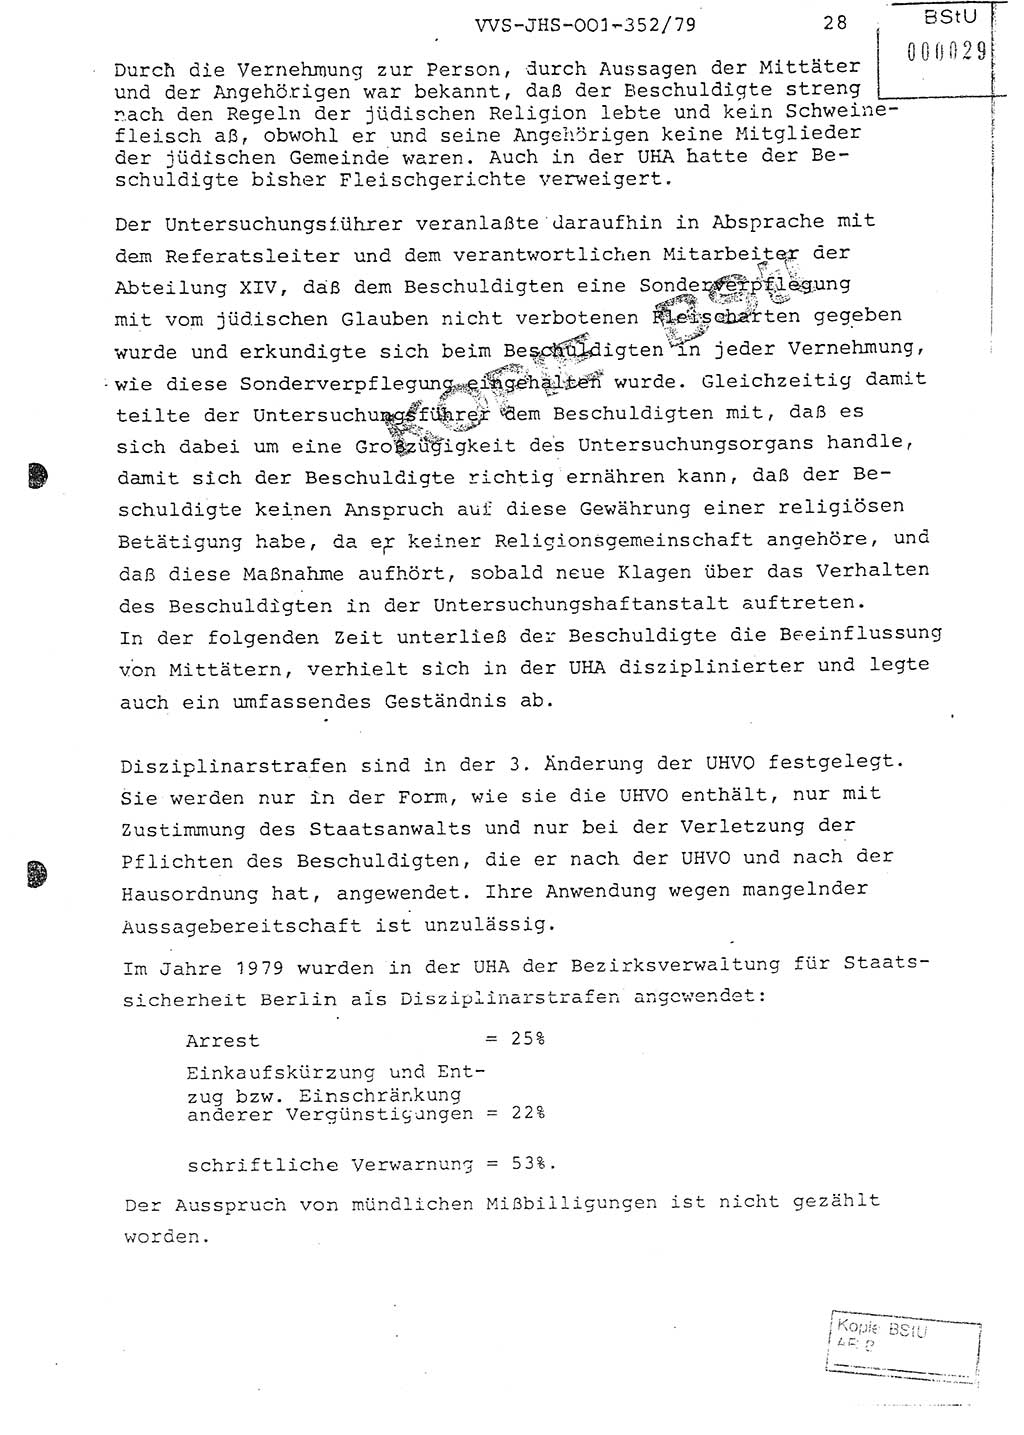 Diplomarbeit Hauptmann Peter Wittum (BV Bln. Abt. HA Ⅸ), Ministerium für Staatssicherheit (MfS) [Deutsche Demokratische Republik (DDR)], Juristische Hochschule (JHS), Vertrauliche Verschlußsache (VVS) o001-352/79, Potsdam 1979, Seite 28 (Dipl.-Arb. MfS DDR JHS VVS o001-352/79 1979, S. 28)